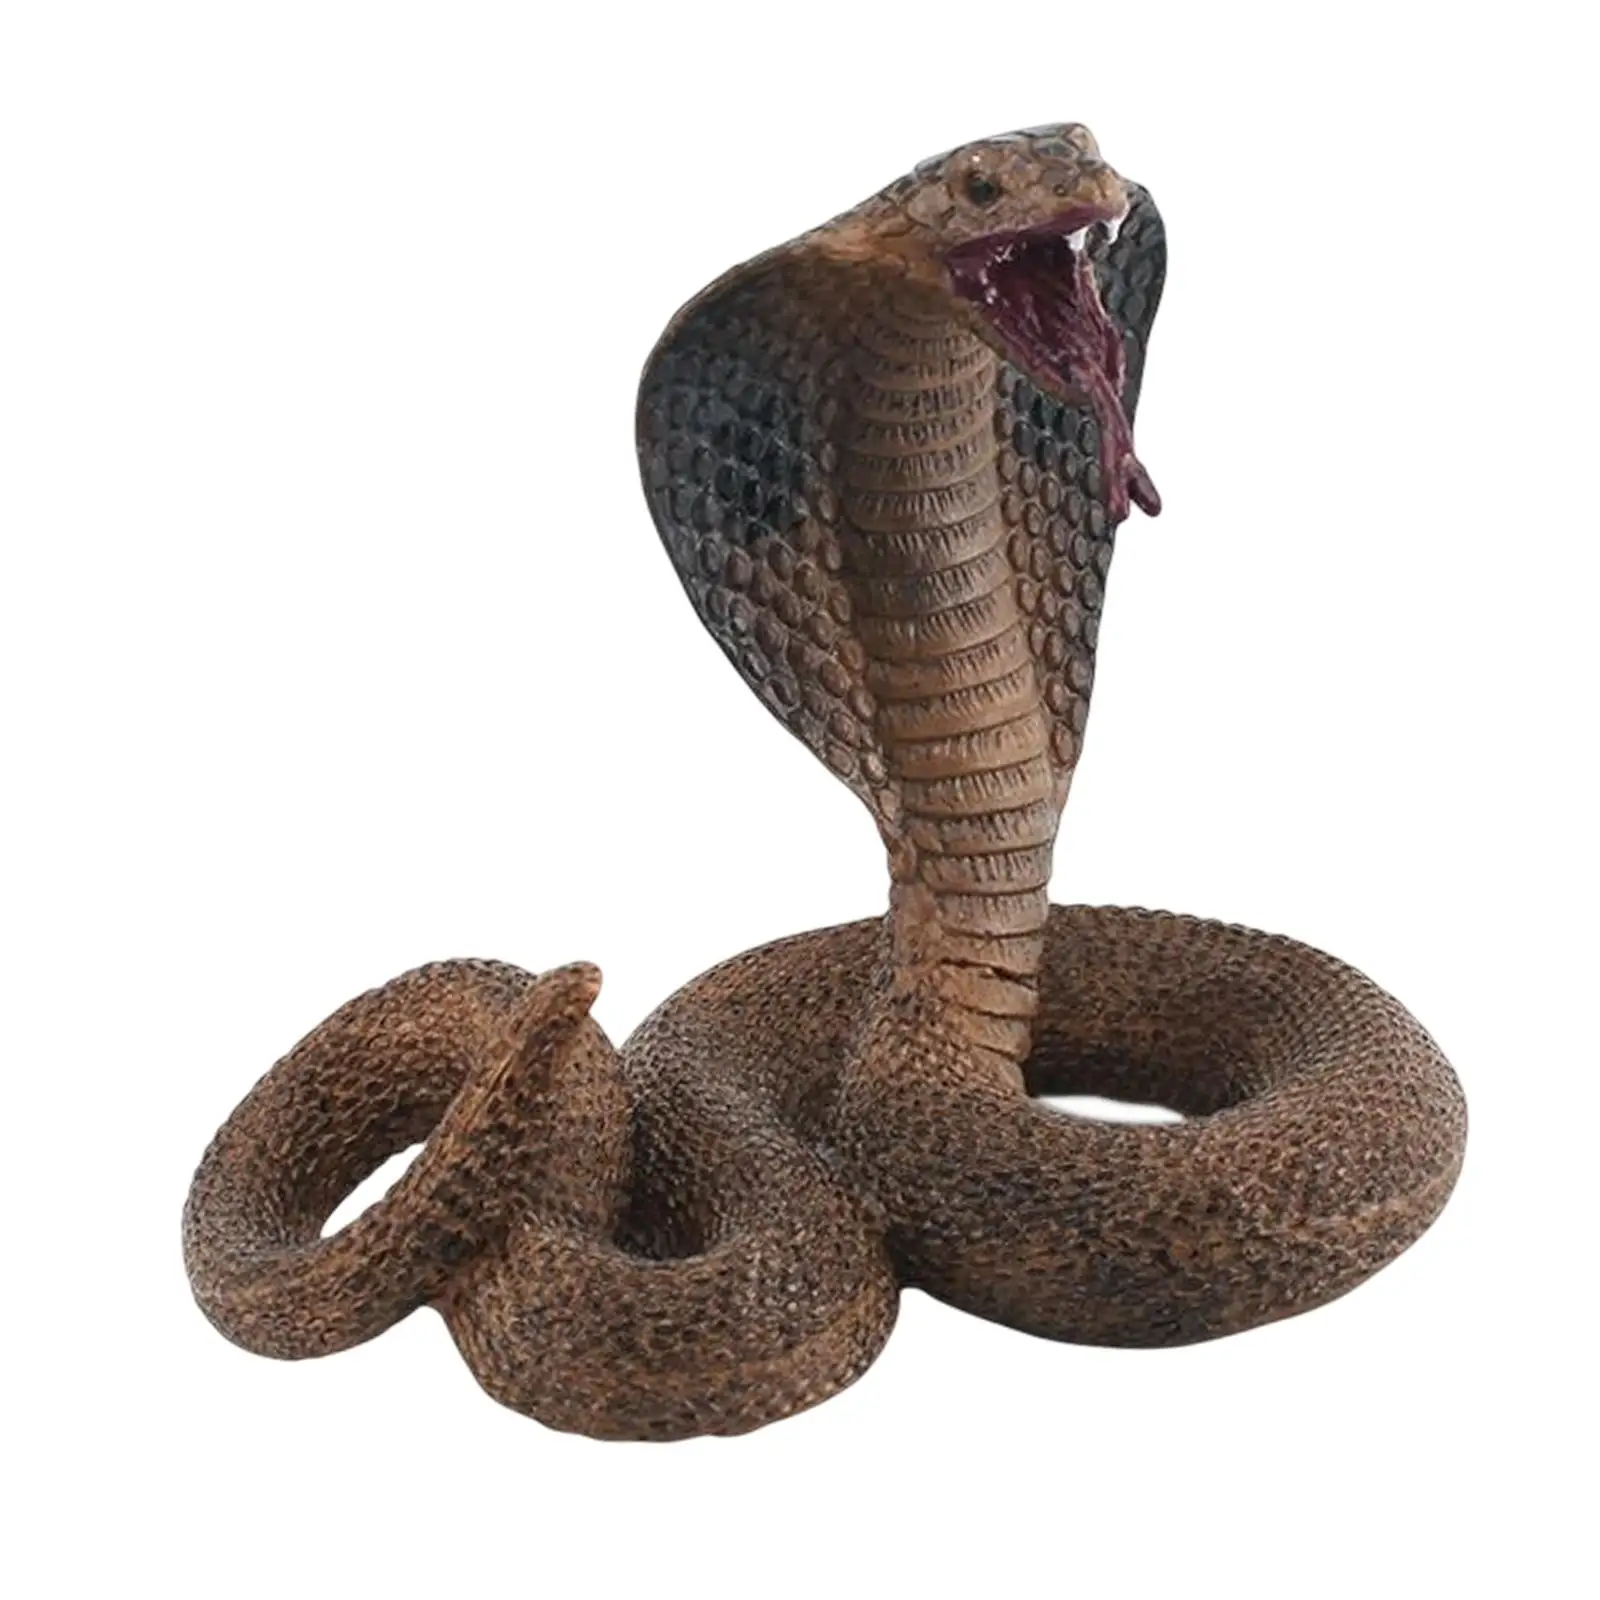 

Имитация змеи модель игрушка Хэллоуин трюки игрушка искусственные Обучающие игрушки искусственная змея фигурка для шуток реквизит